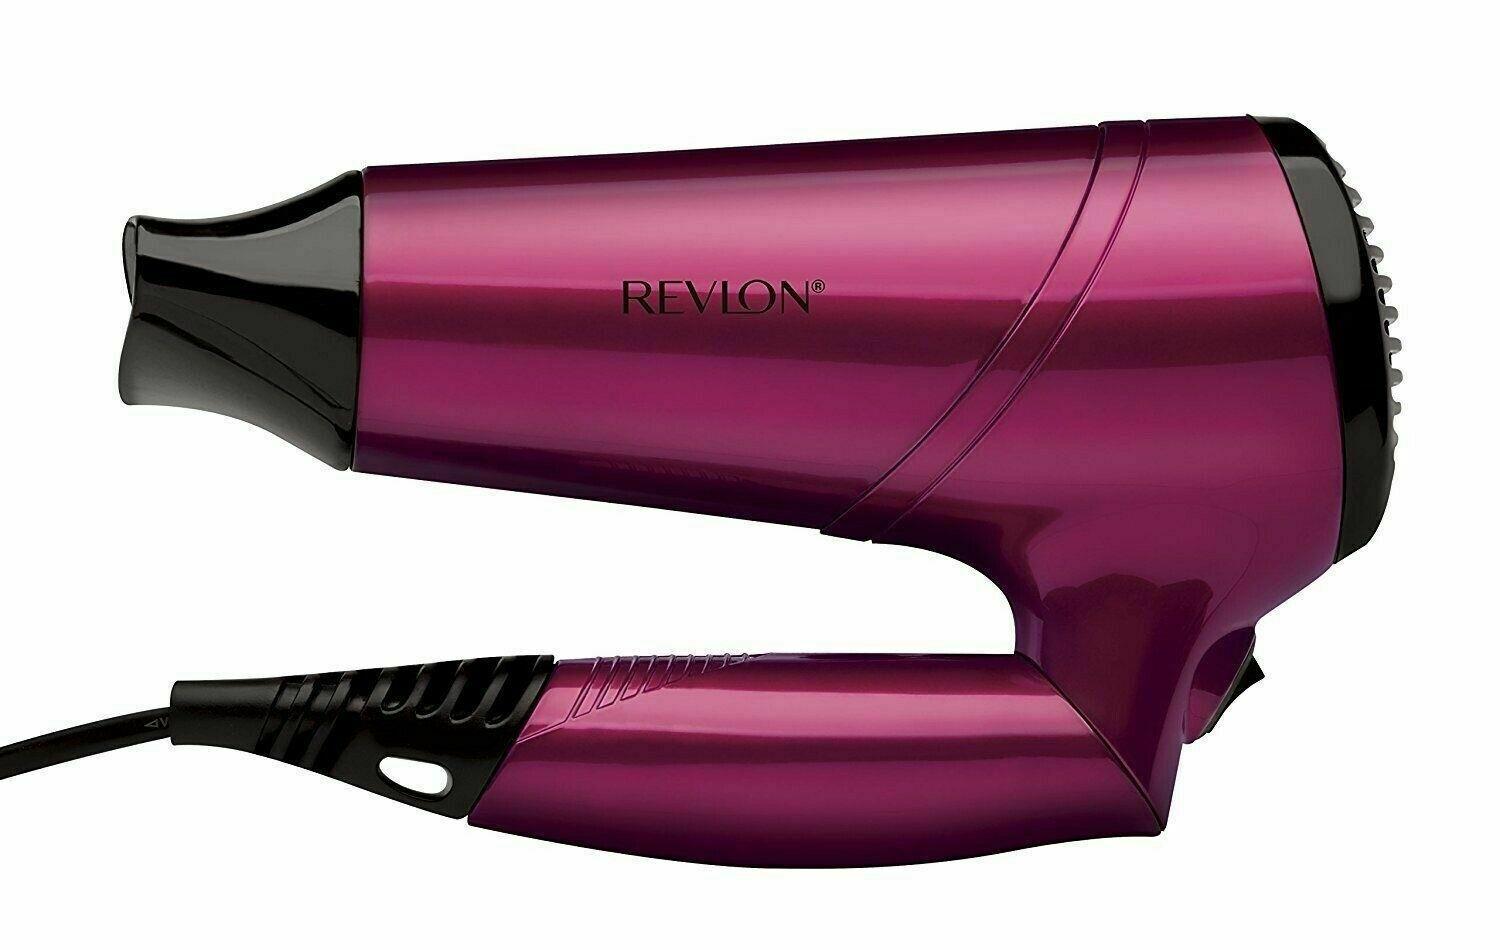 Revlon Frizz Free 3 Heat 2 Speed Settings Ionic Hair Dryer 2200W - RVDR5229UK